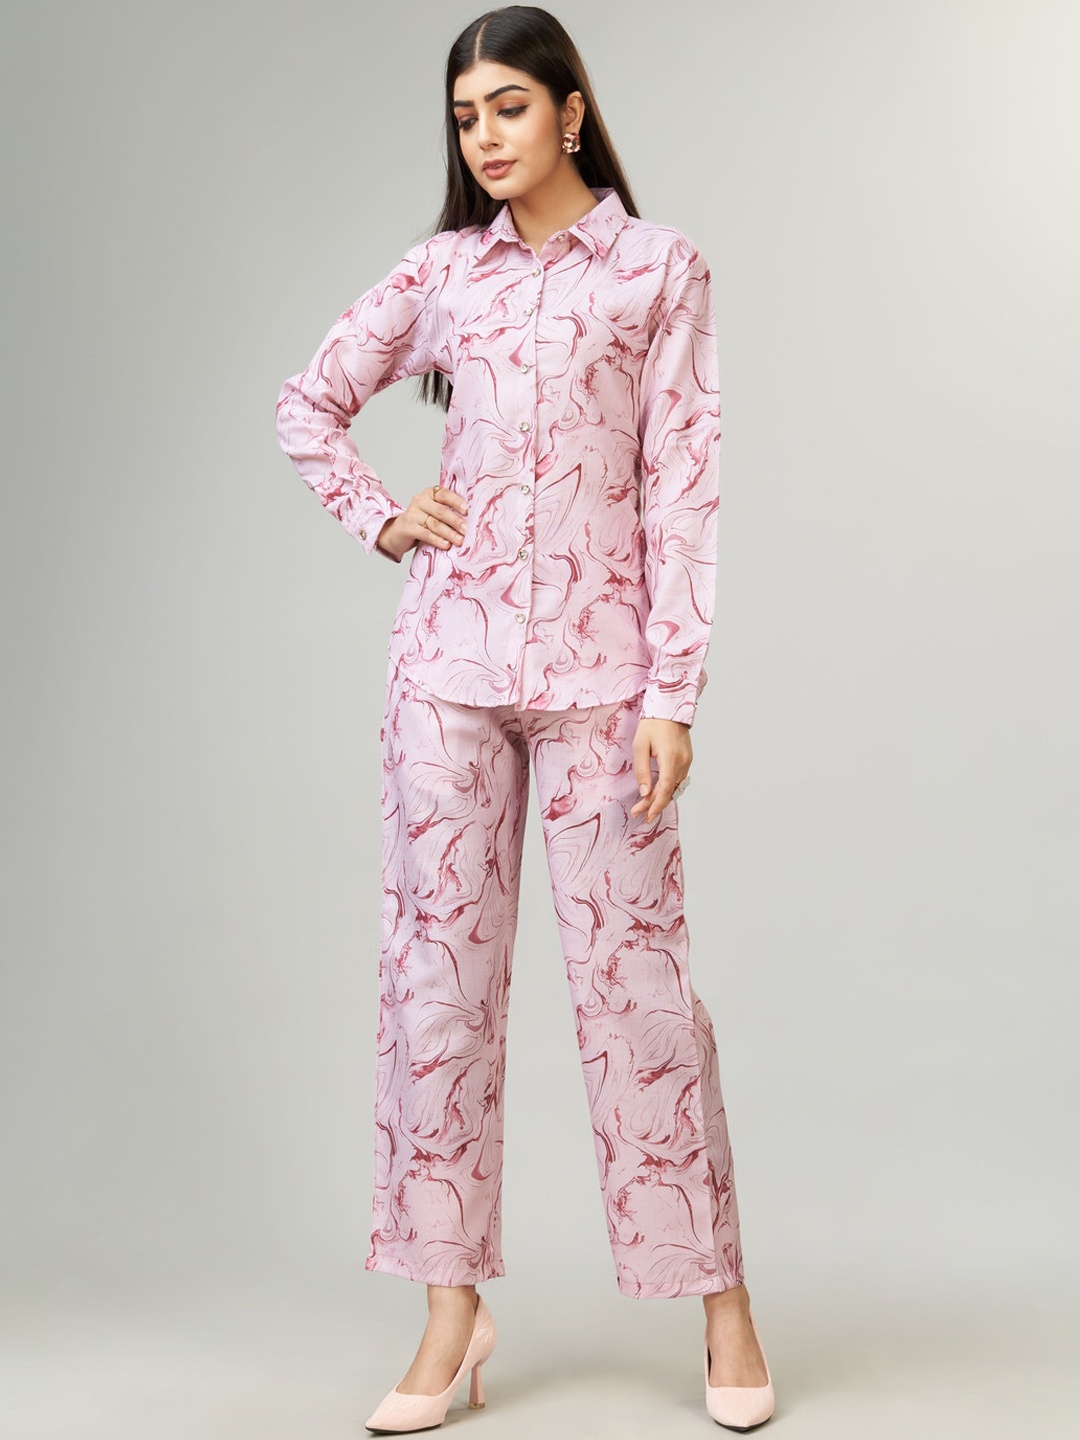 

Kandora Abstract Printed Long Sleeves Shirt & Trousers, Pink